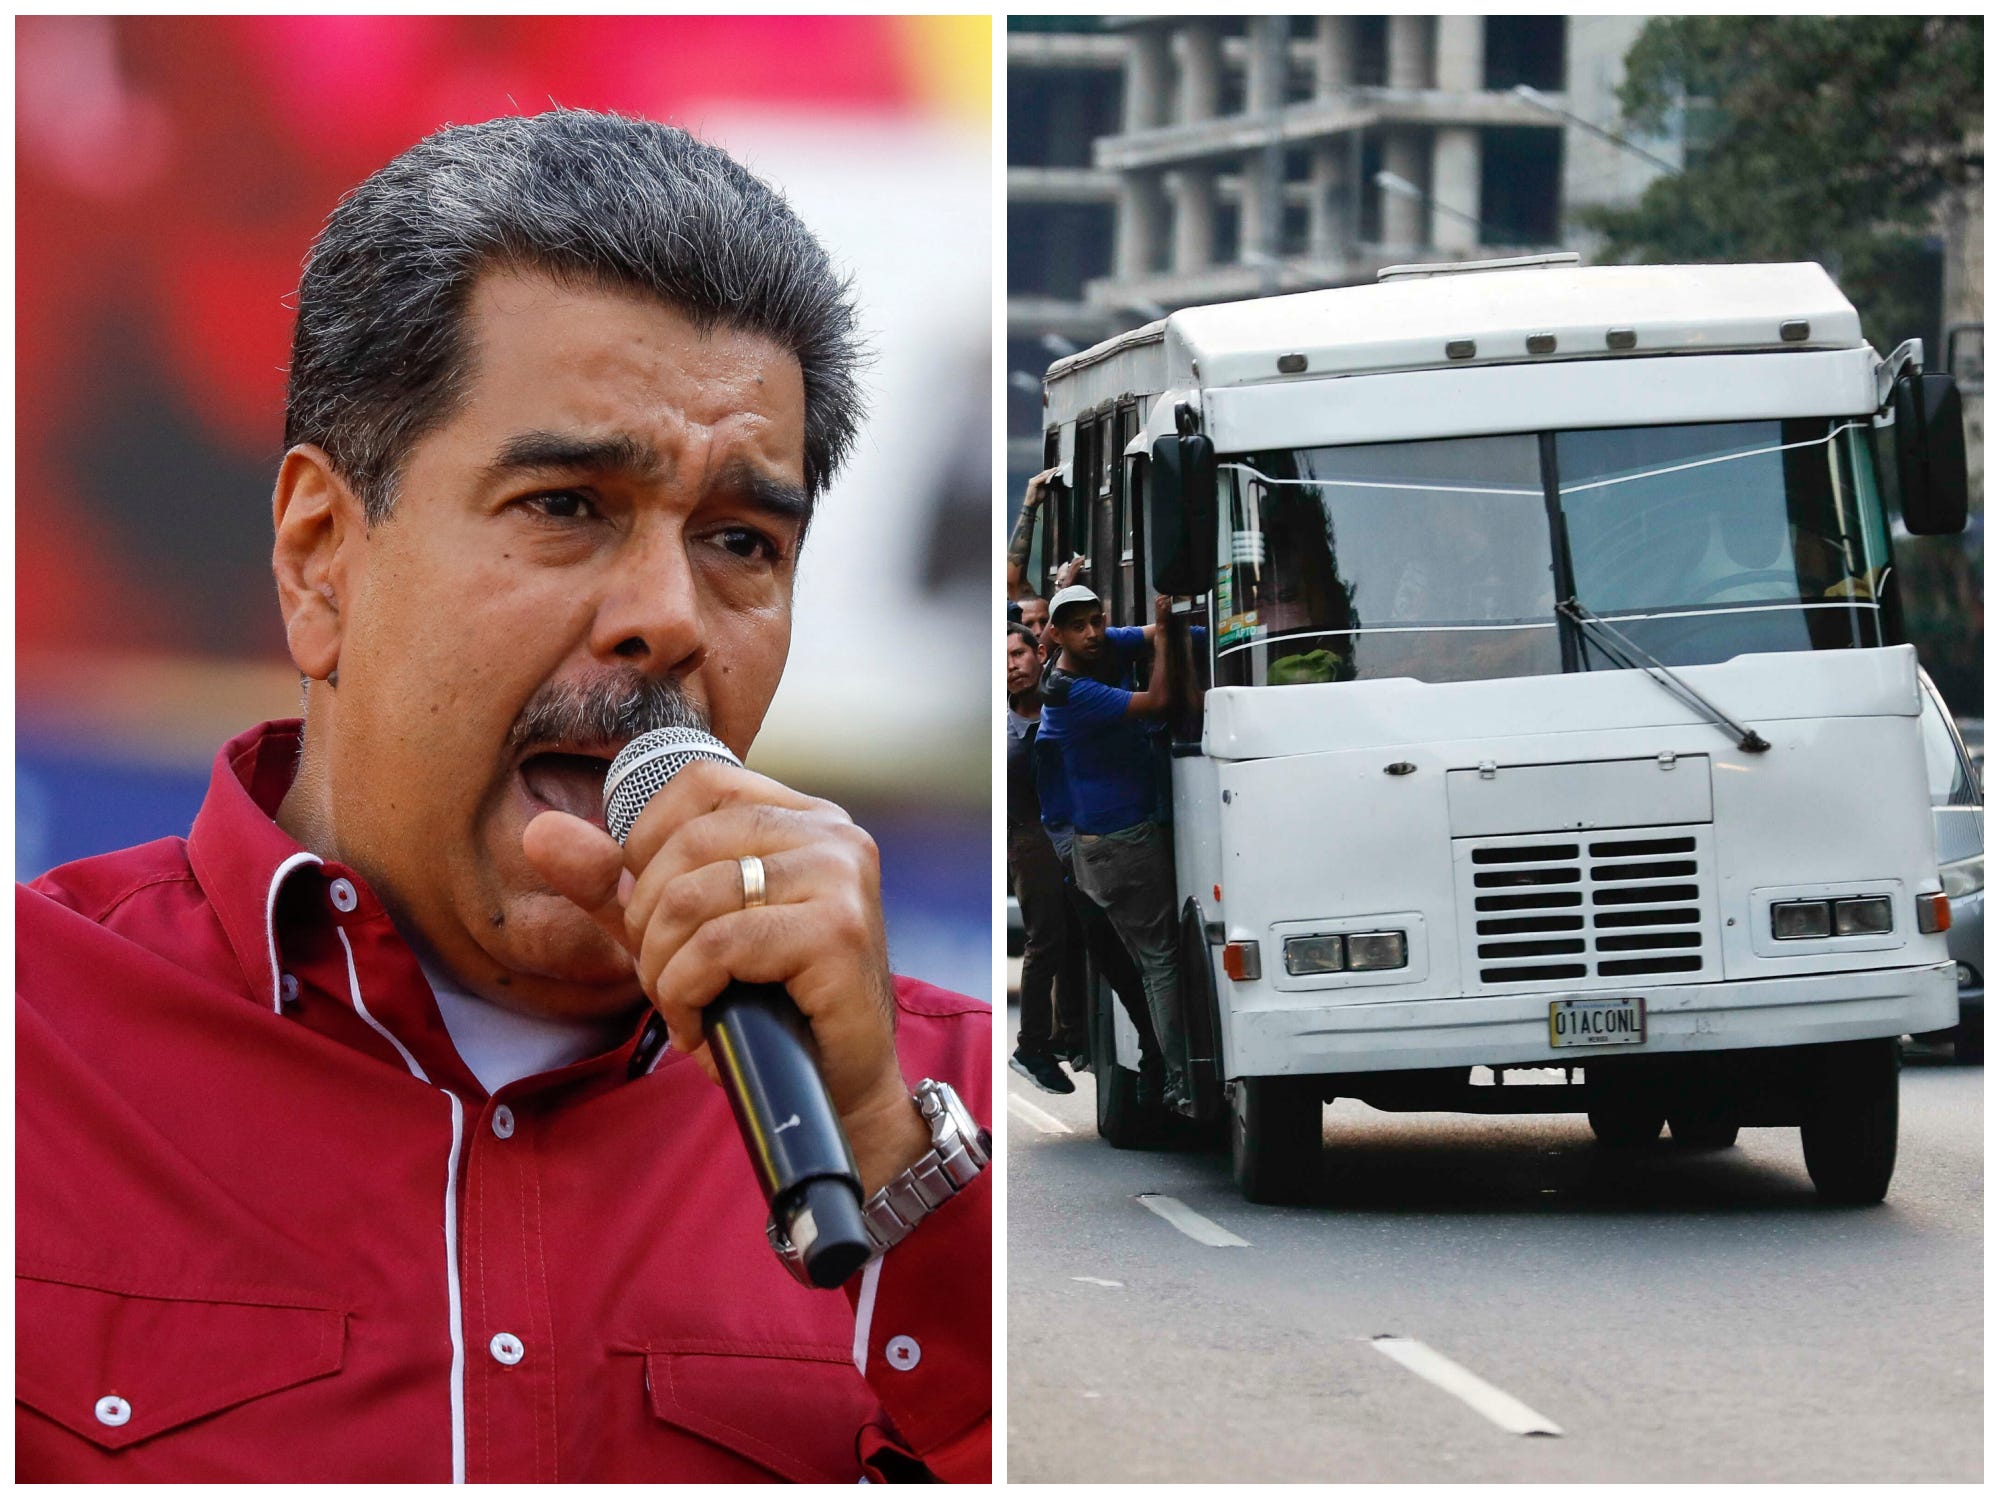 Zij-aan-zij beeld van de Venezolaanse president Nicolas Maduro die in een microfoon spreekt in 2023, en een overvolle witte bus in Caracas in 2019.